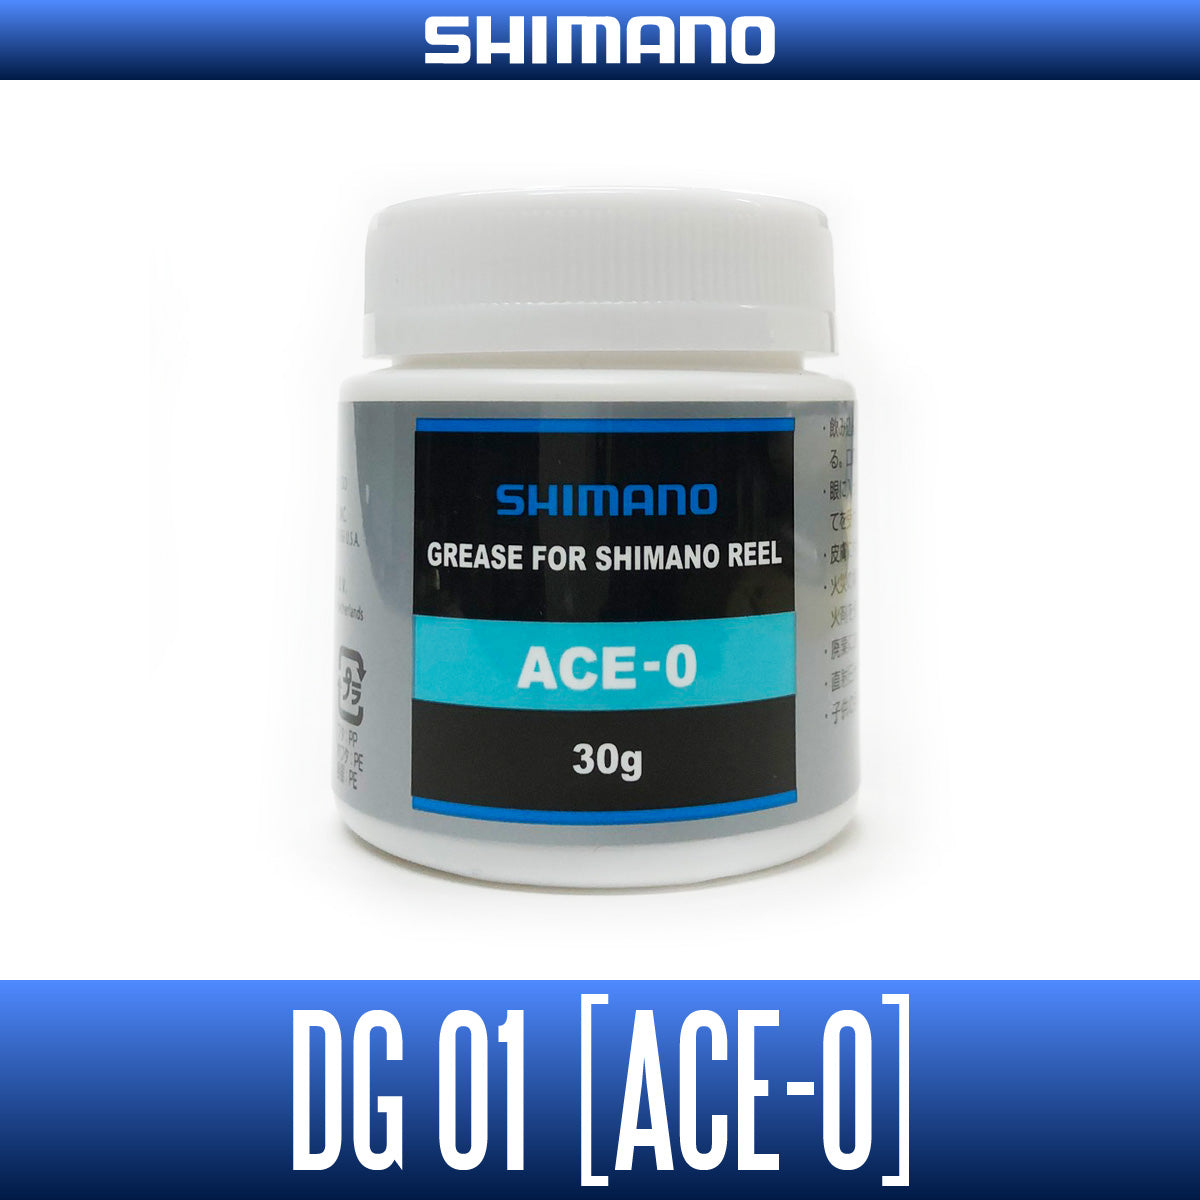 Shimano Original service grease ACE-0